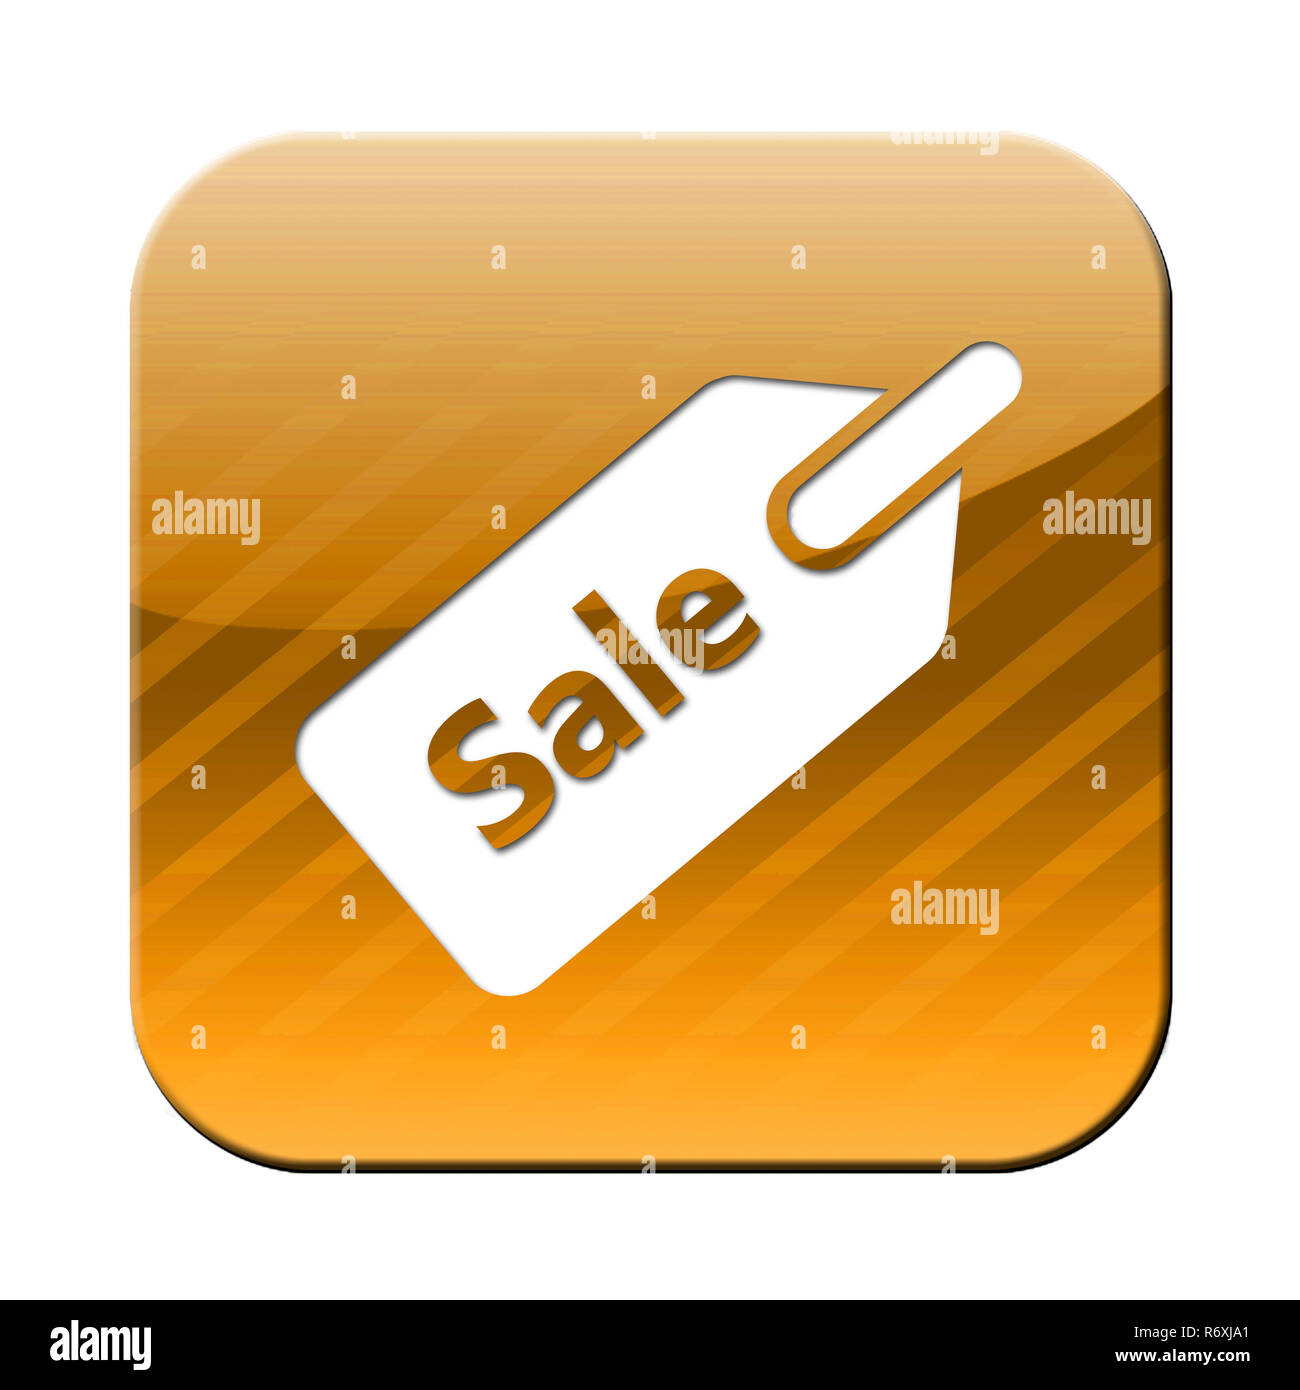 Verkauf - Button Symbol für Verkauf und Handel Stockfoto